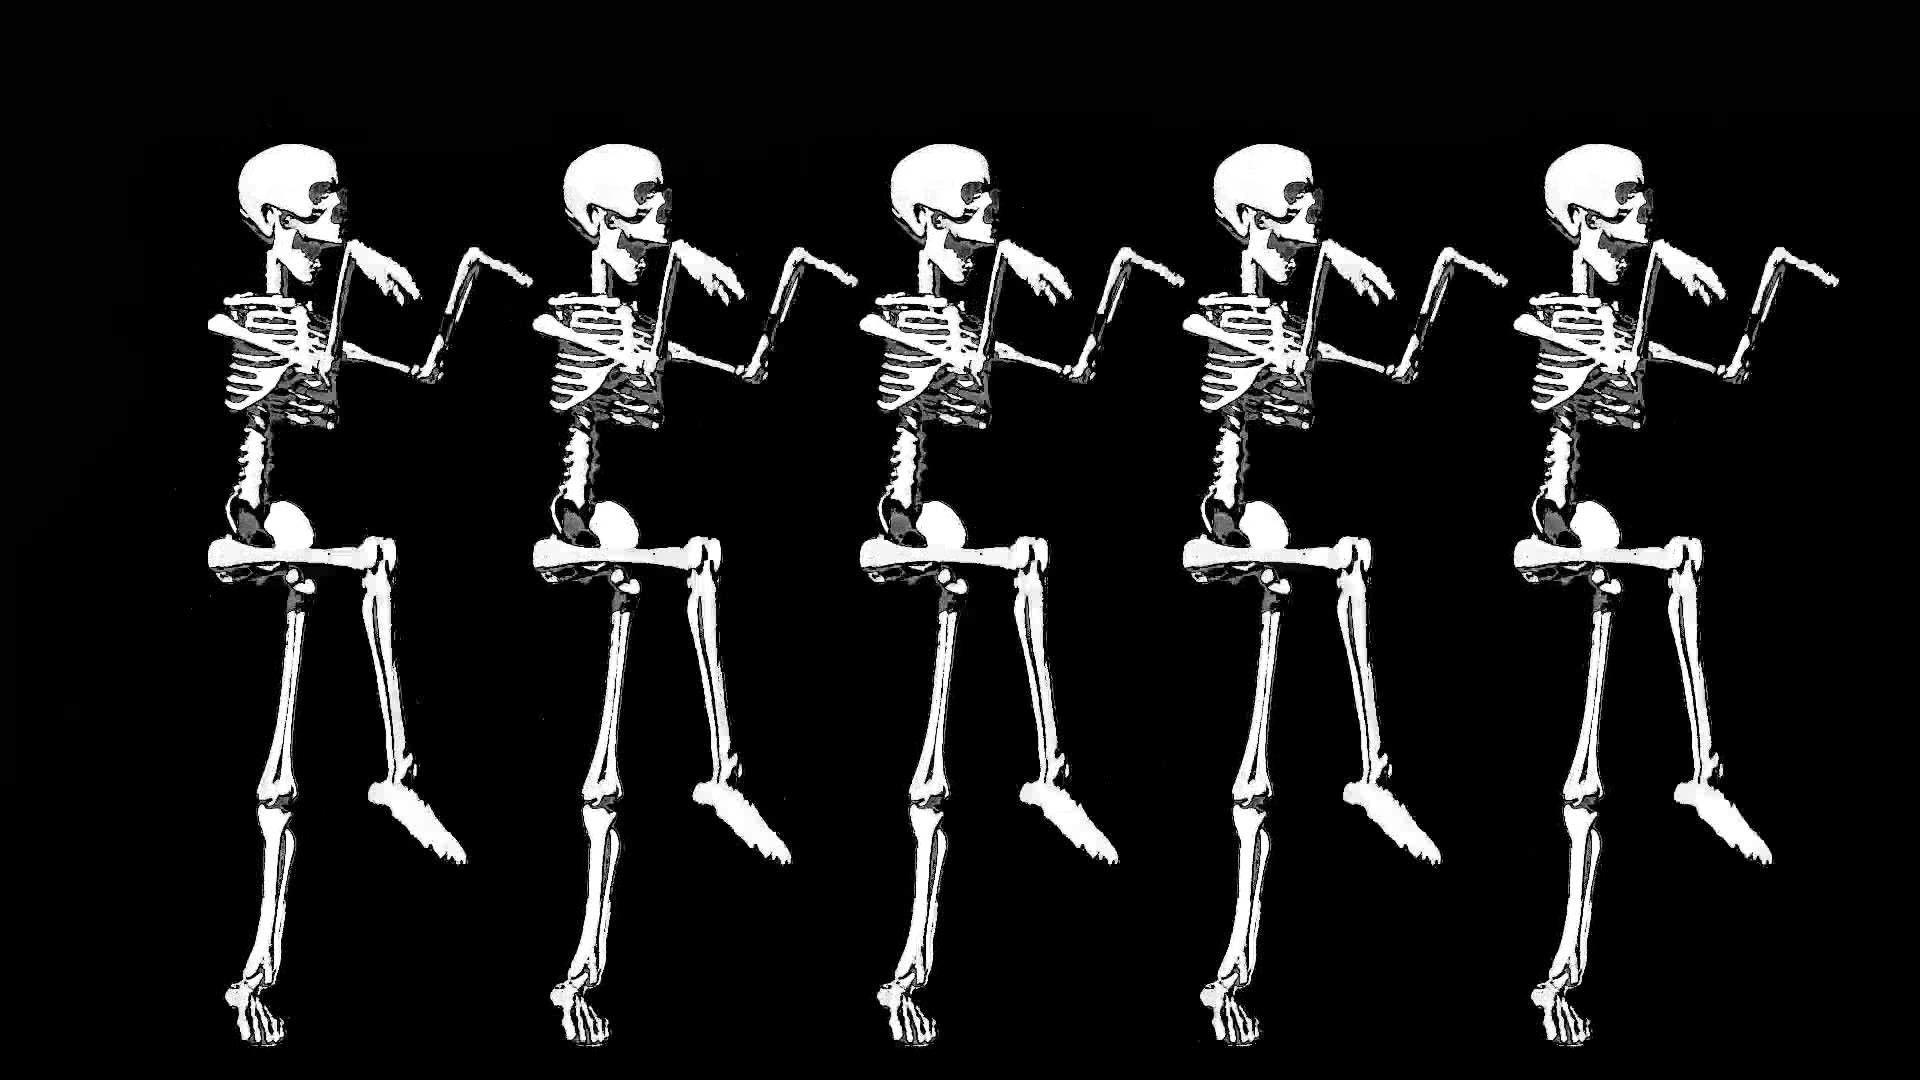 Skeleton Aesthetic Wallpapers - Top Hình Ảnh Đẹp